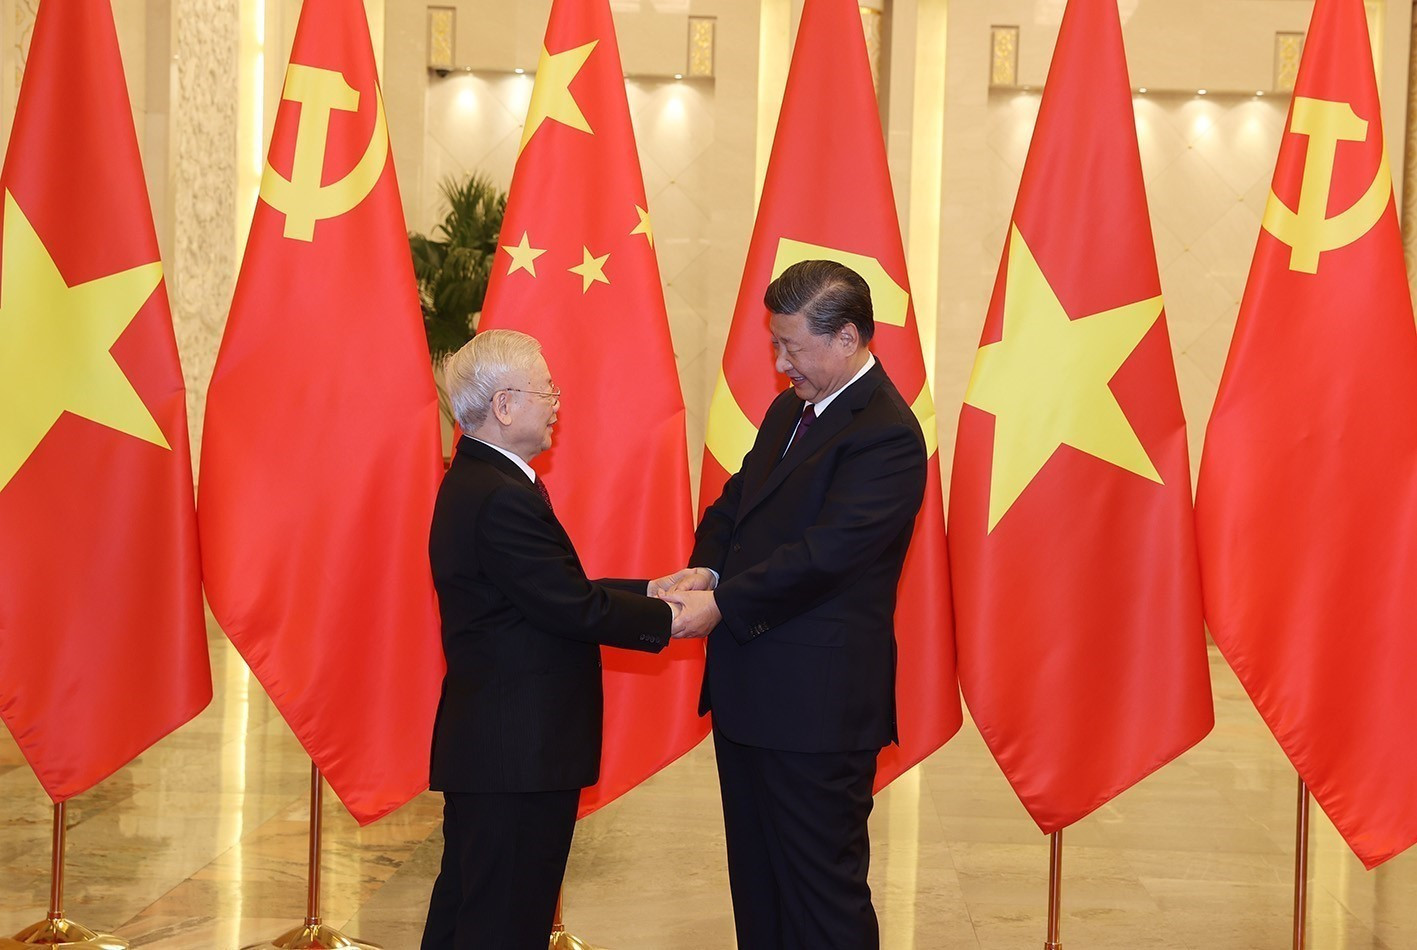 Chuyến thăm của Tổng Bí thư Tập Cận Bình sẽ tạo động lực mạnh mẽ cho quan hệ Việt-Trung- Ảnh 1.